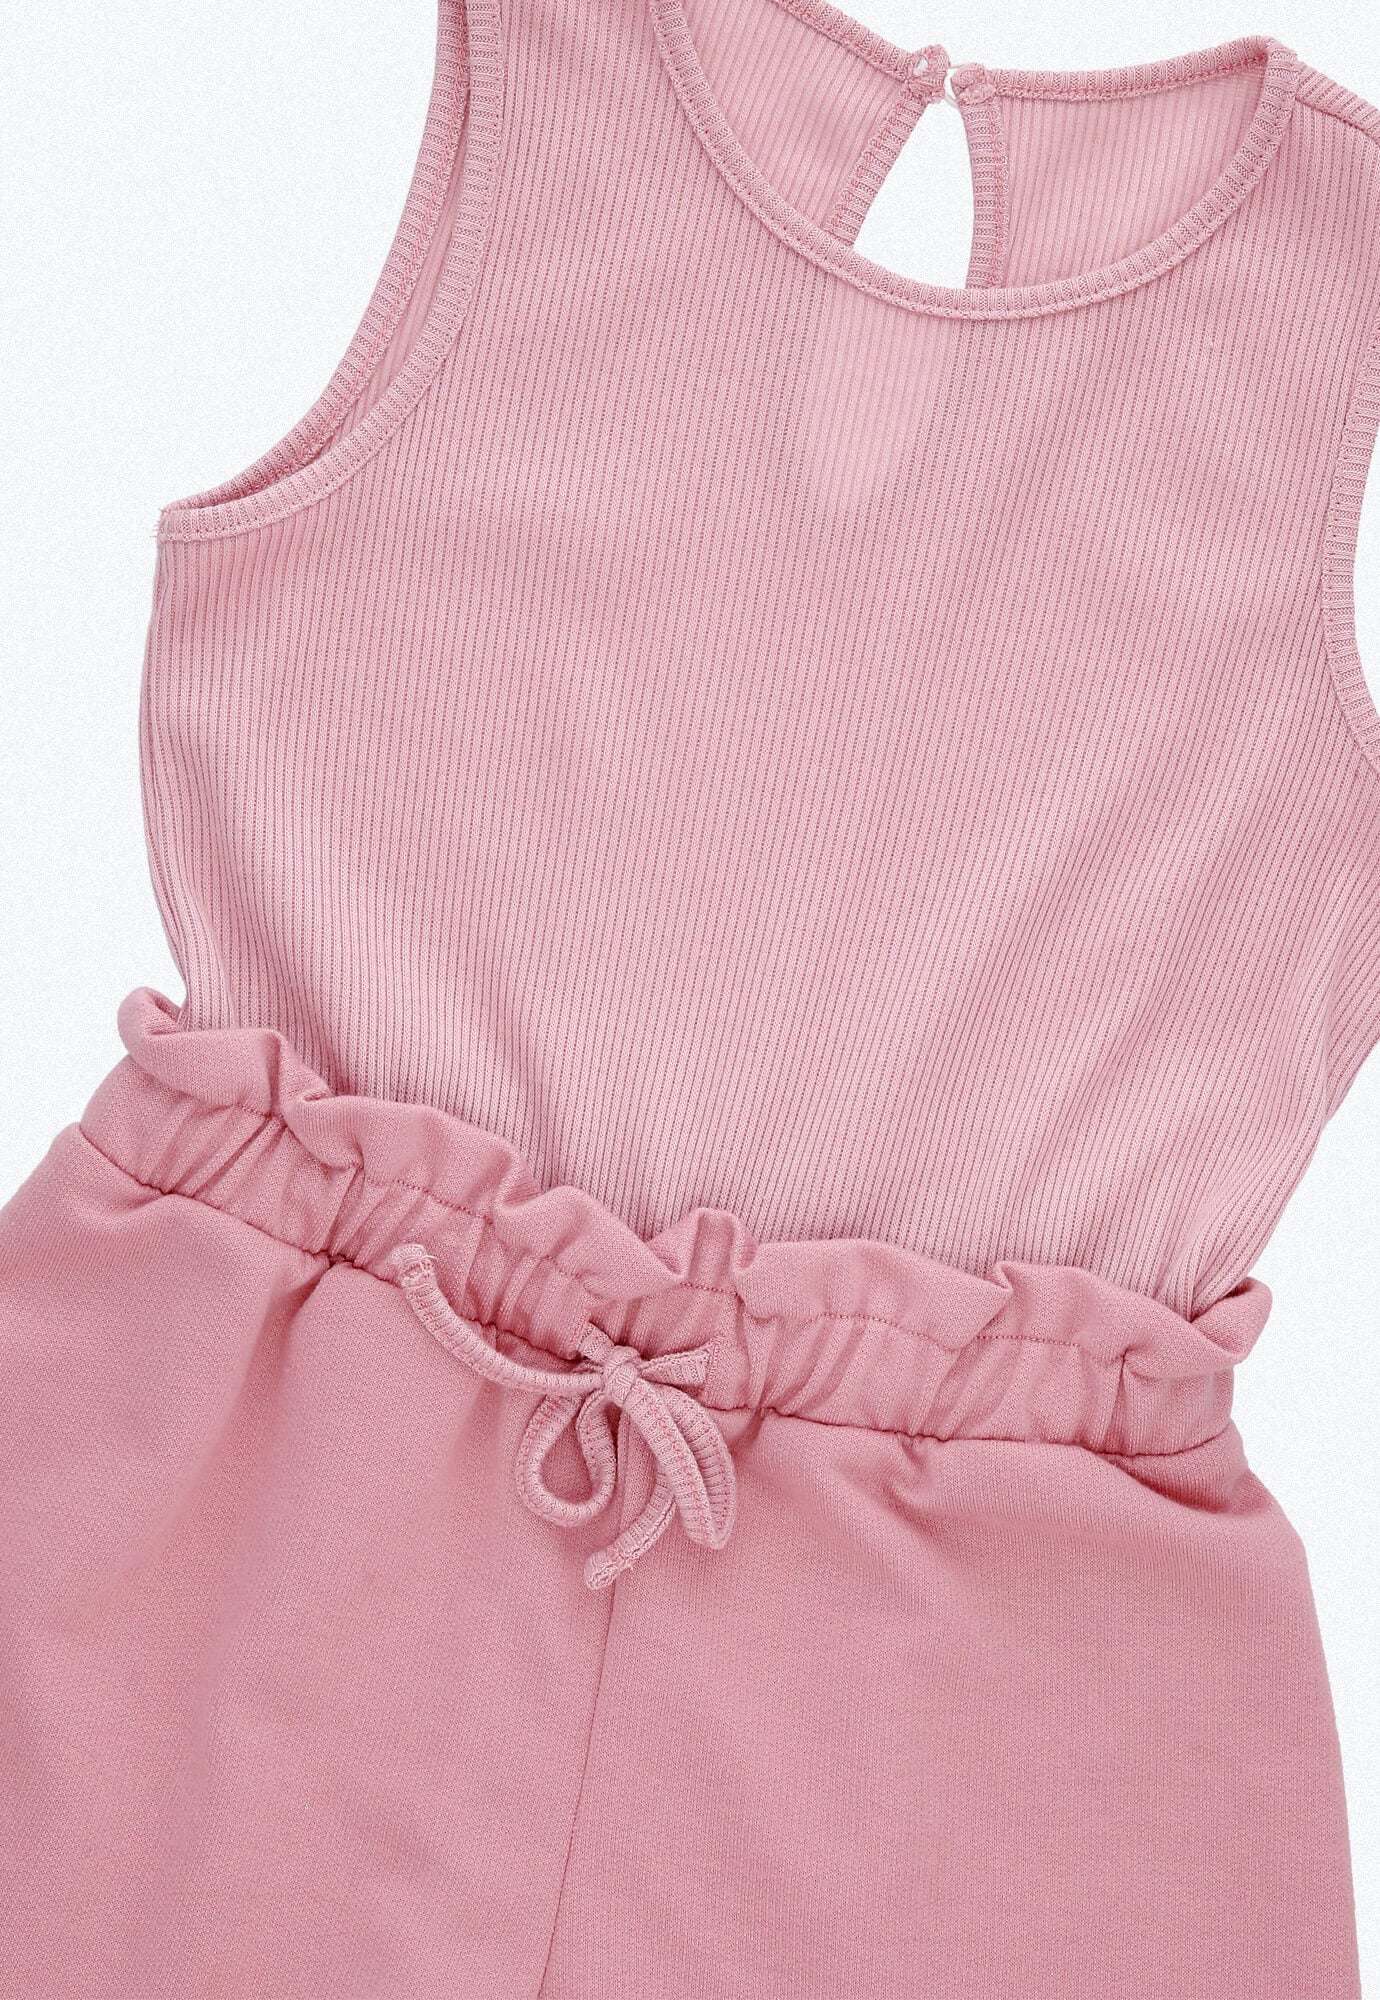 Overol rosa claro con rib en la parte superior, con cintura elástica y abertura en espalda con botón para bebé niña